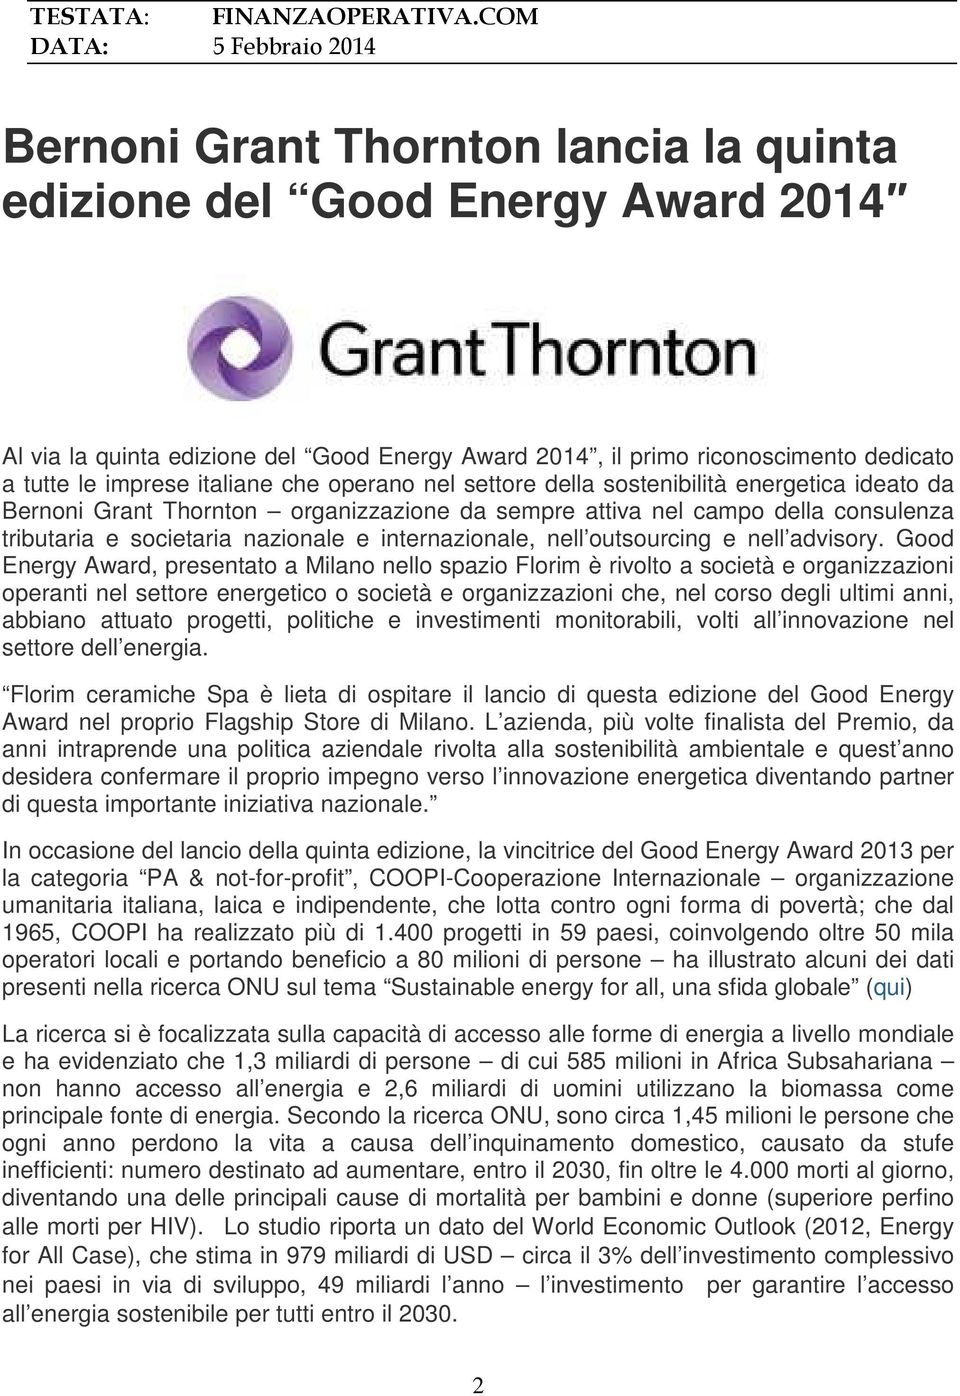 imprese italiane che operano nel settore della sostenibilità energetica ideato da Bernoni Grant Thornton organizzazione da sempre attiva nel campo della consulenza tributaria e societaria nazionale e